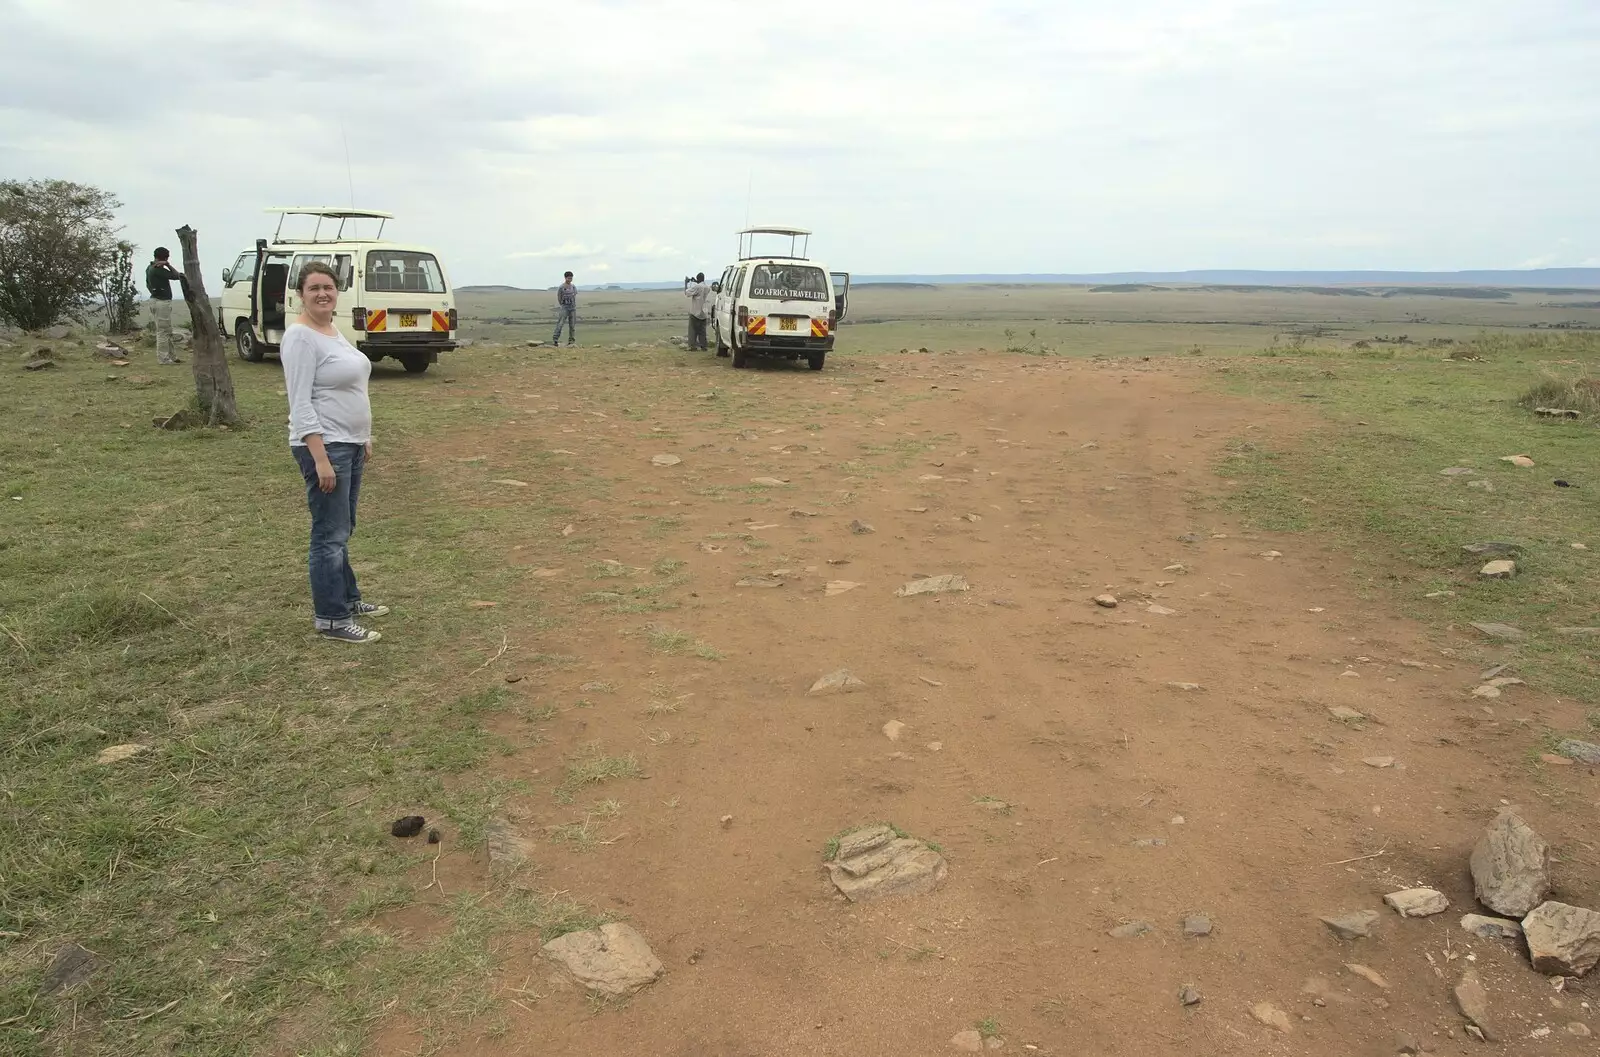 We park up for a picnic, from Maasai Mara Safari and a Maasai Village, Ololaimutia, Kenya - 5th November 2010